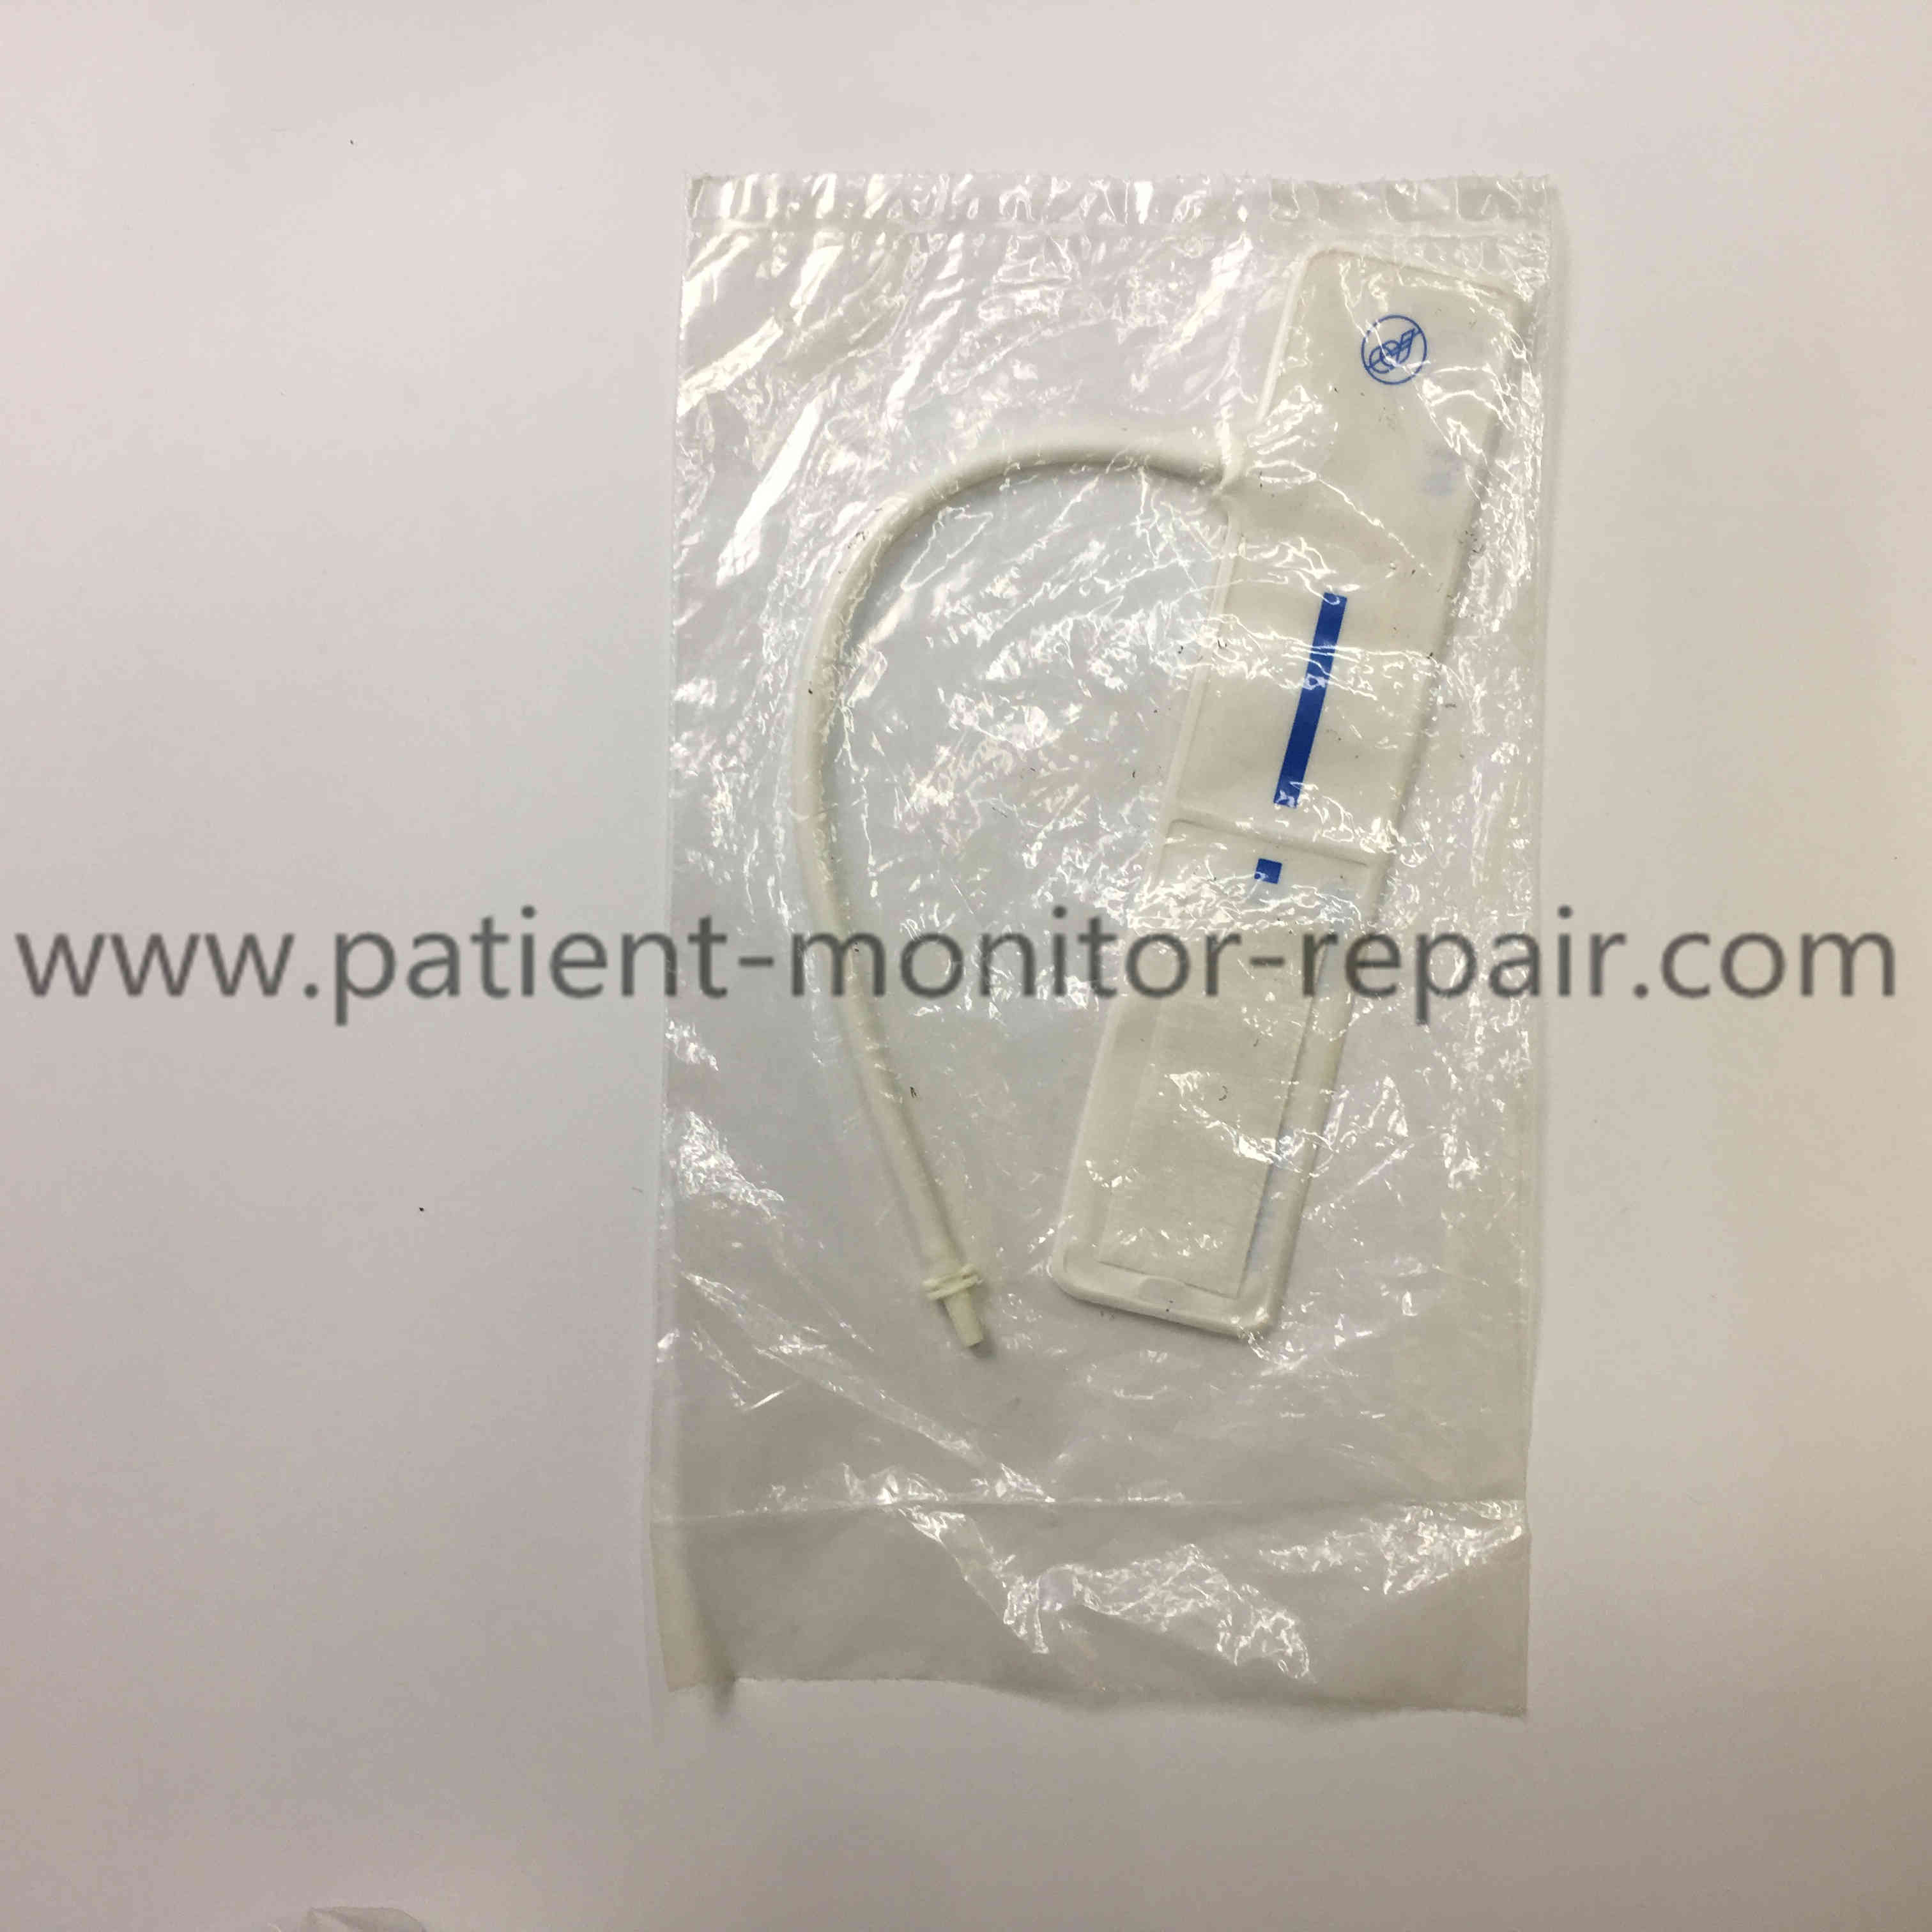 Philips M1870A Neonatal Disposable Single-Patient NIBP Cuff #3 5.8-10.9CM